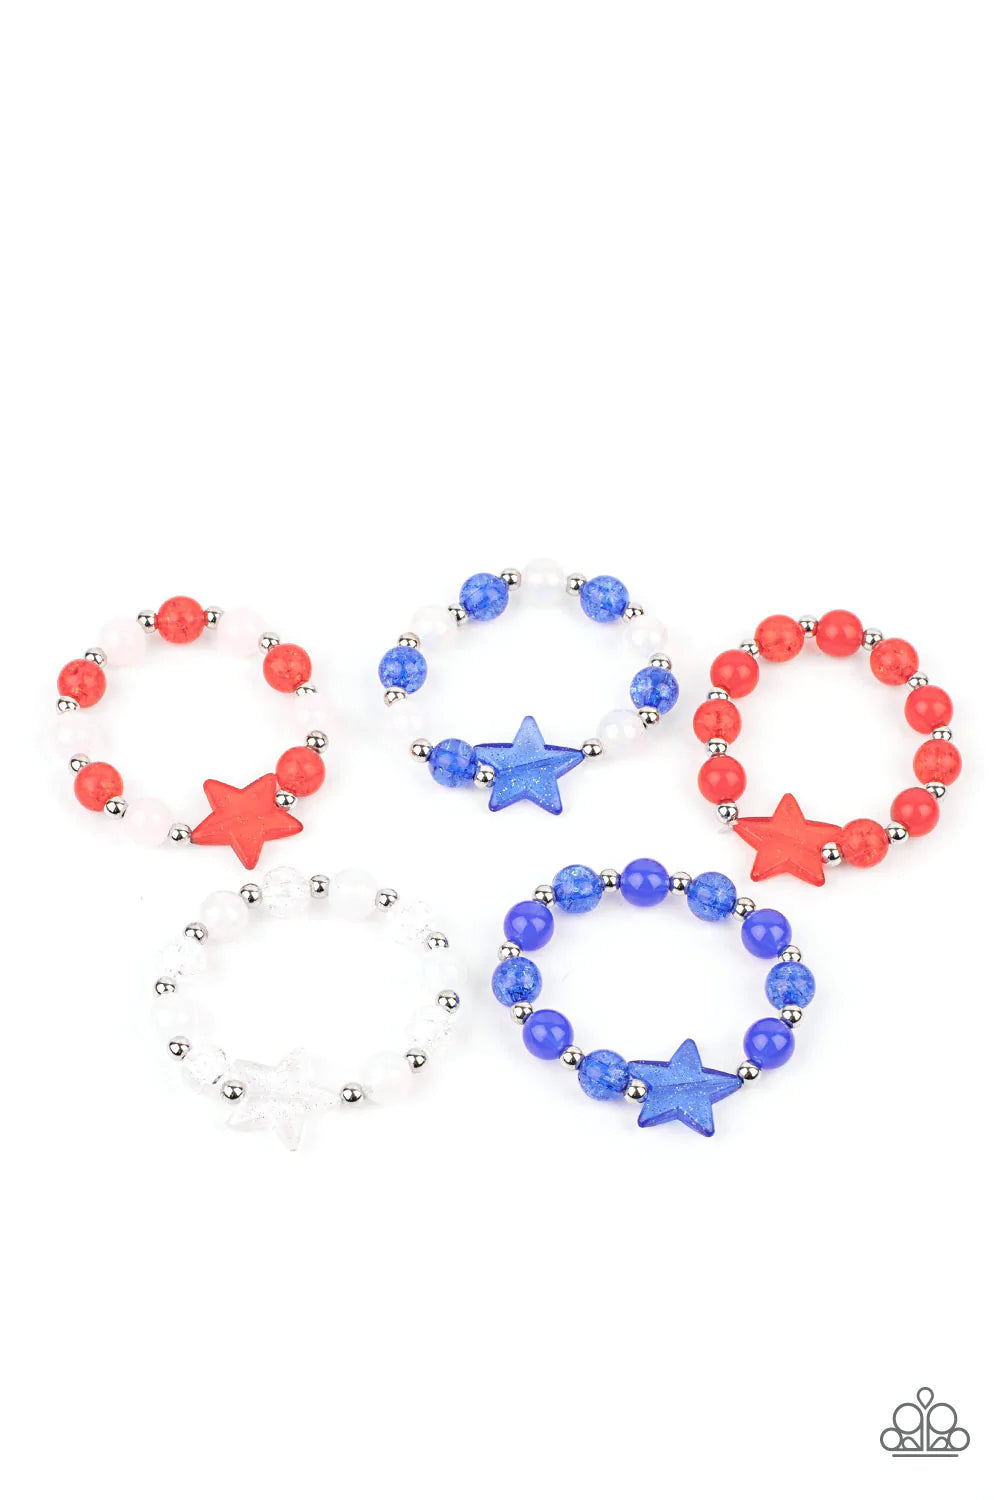 ♥ Starlet Shimmer Bracelets Set ♥ Patriotic Sparkly Stars